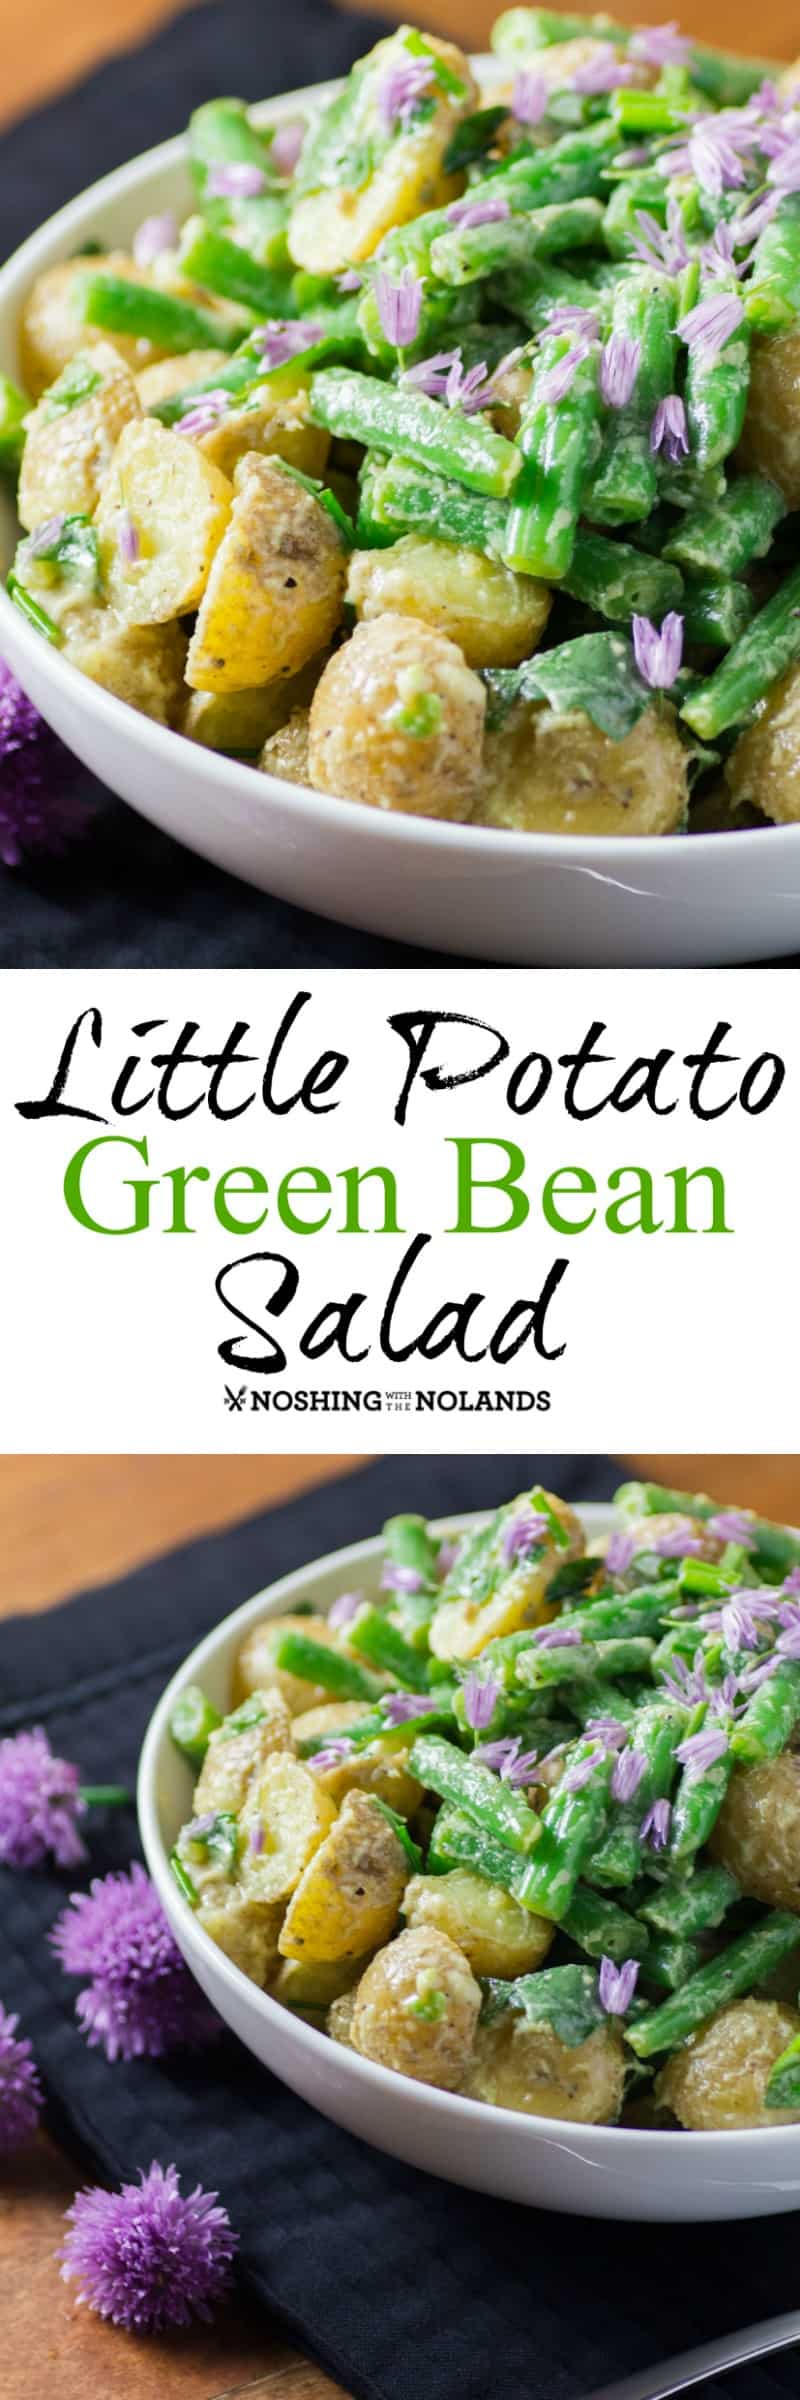 Little Potato Green Bean Salad